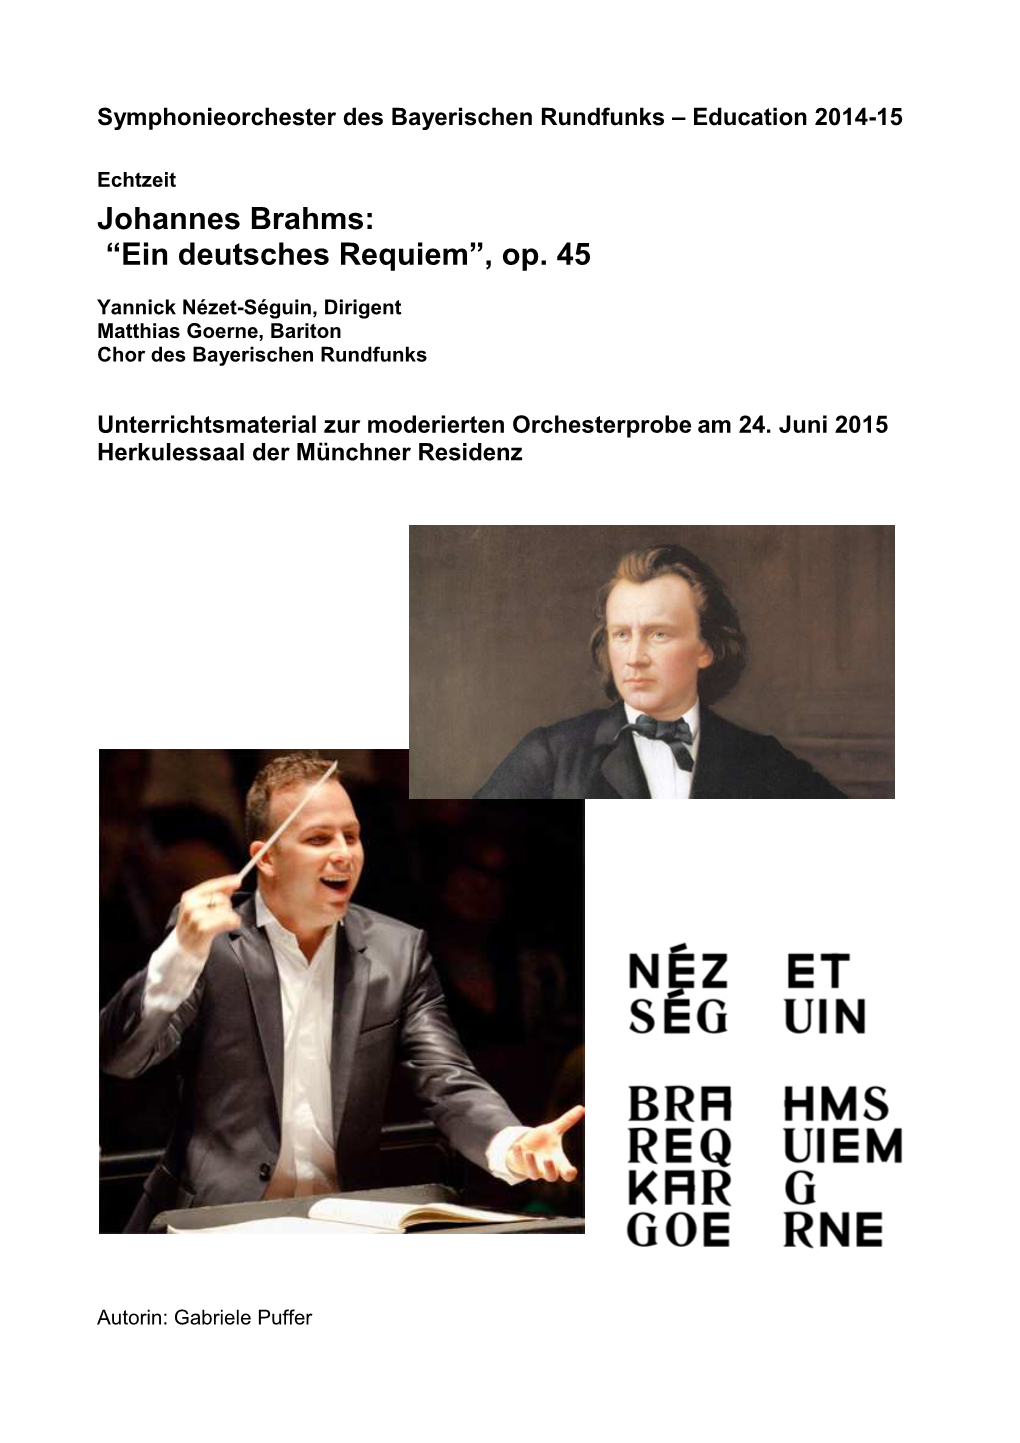 Johannes Brahms: “Ein Deutsches Requiem”, Op